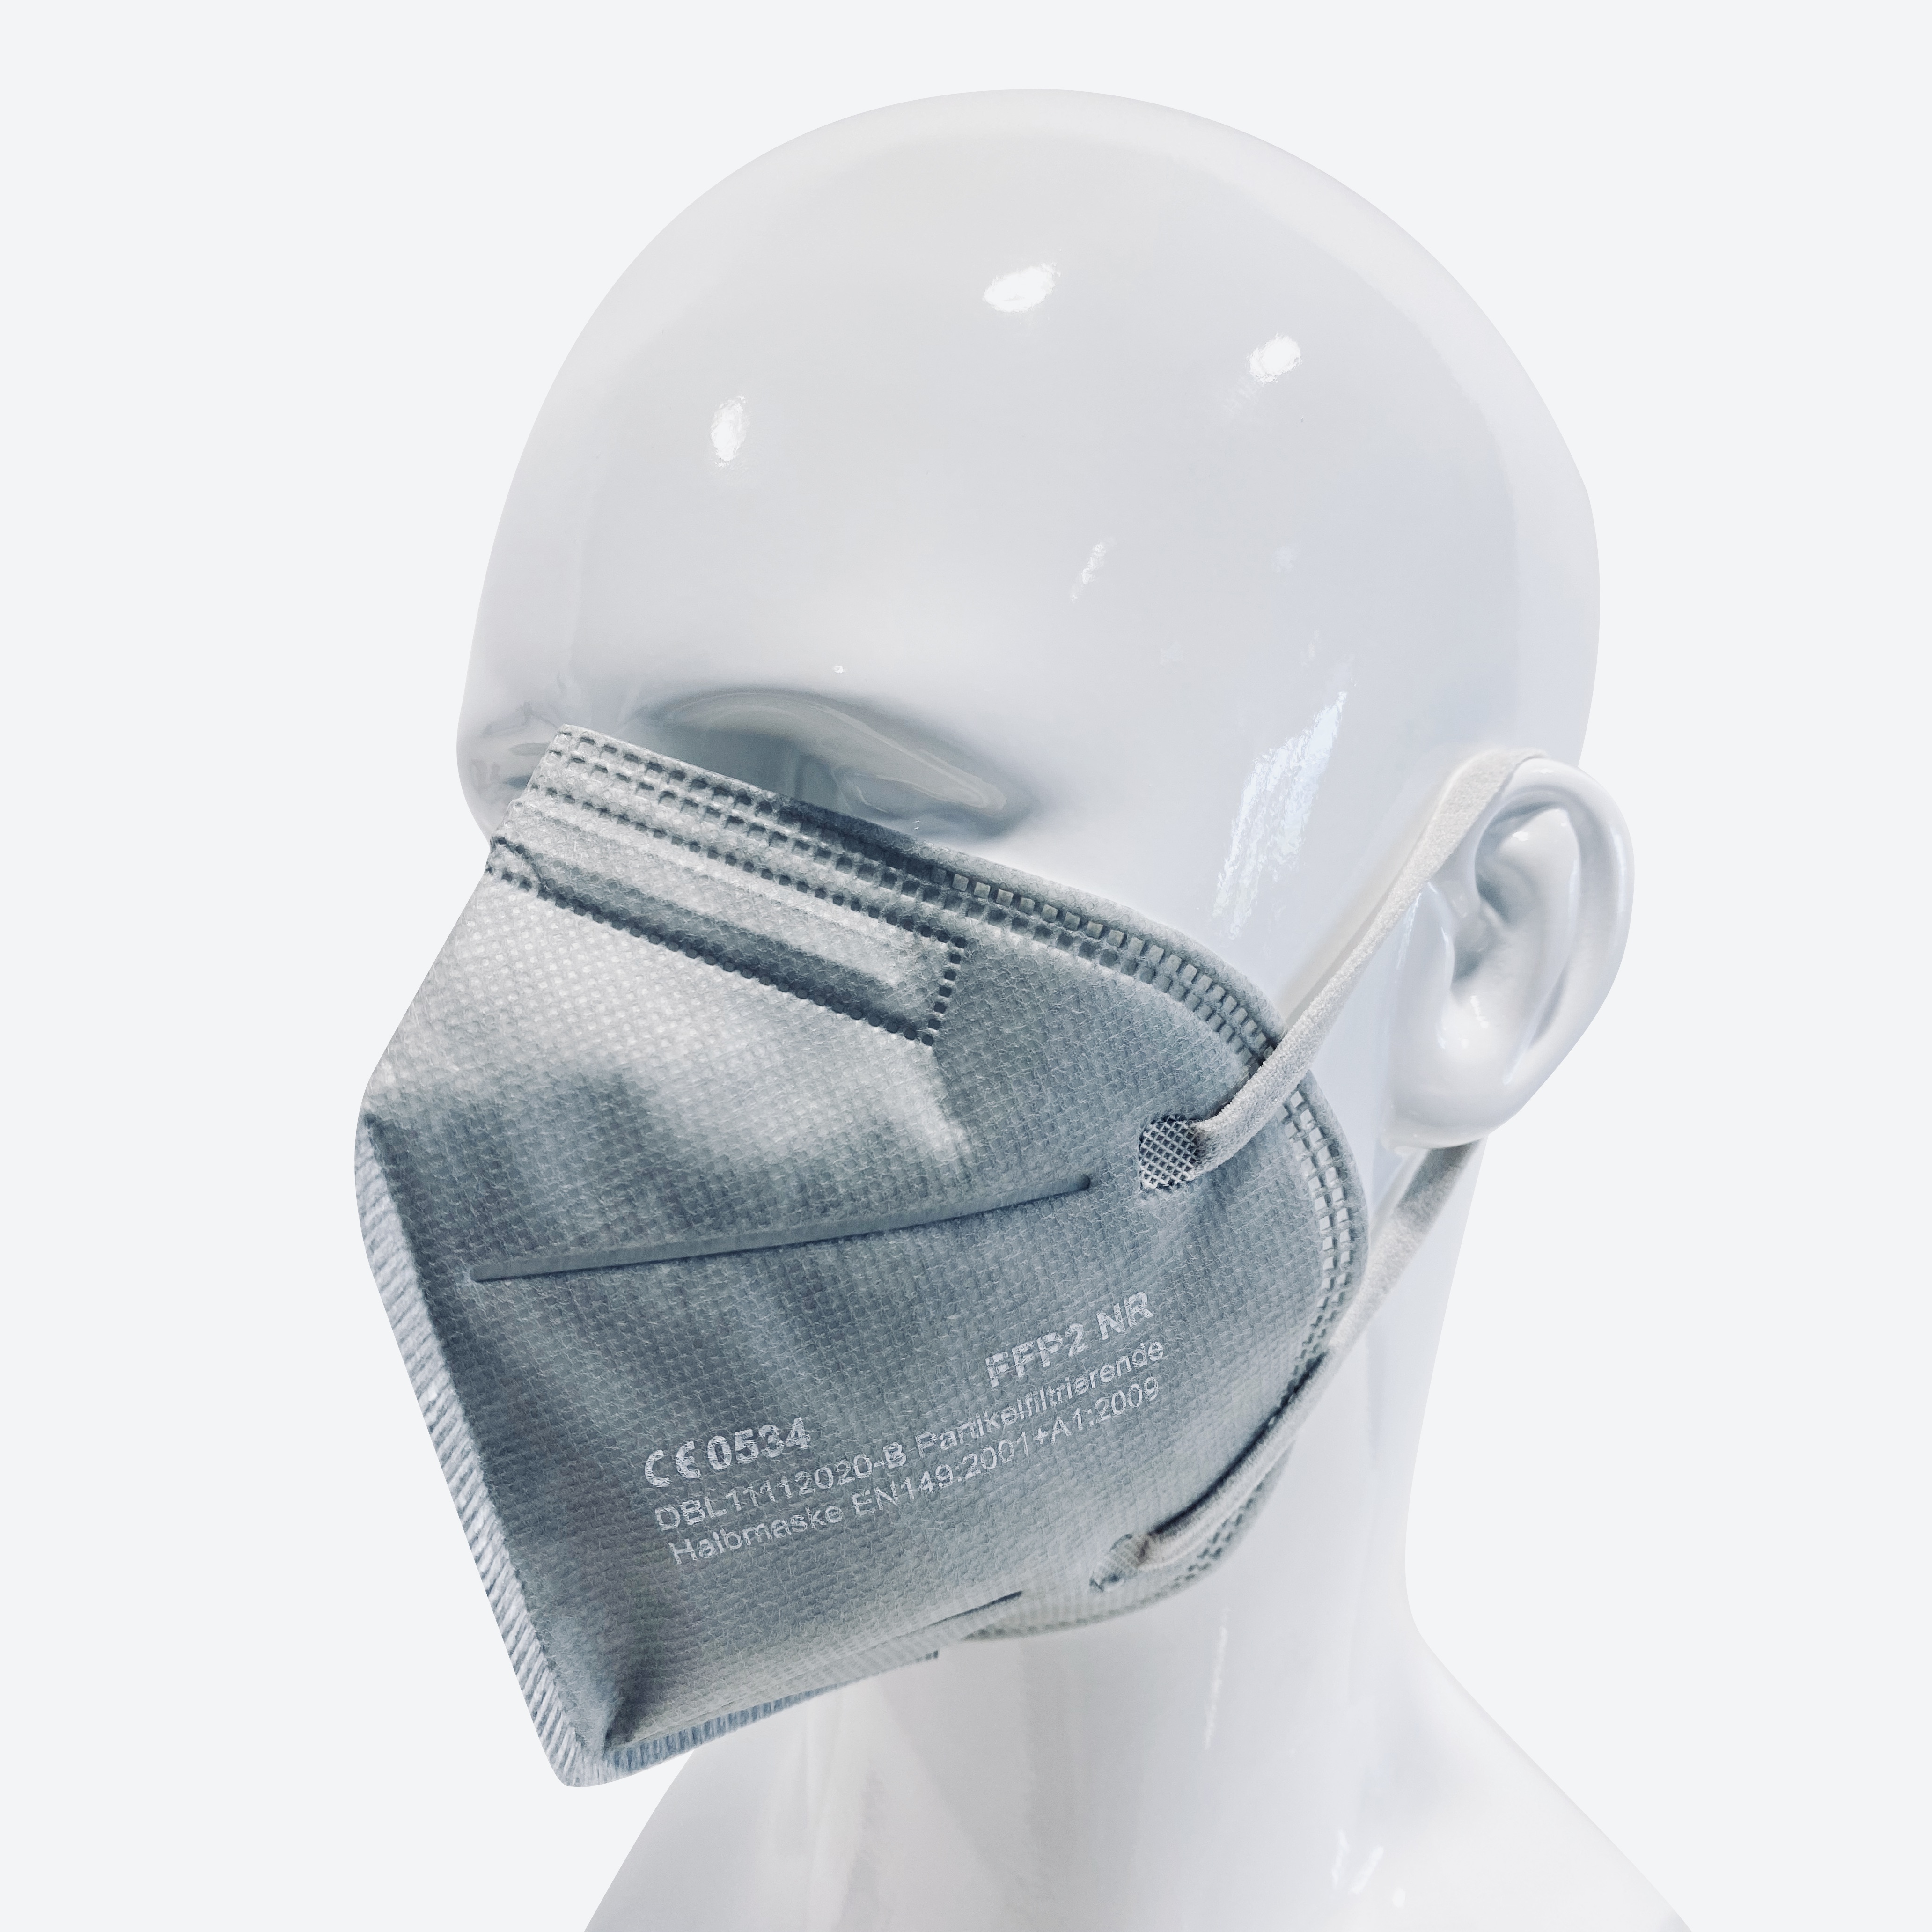 Qualitativ hochwertige FFP2-Schutzmasken - MRS. GREY EDITION 